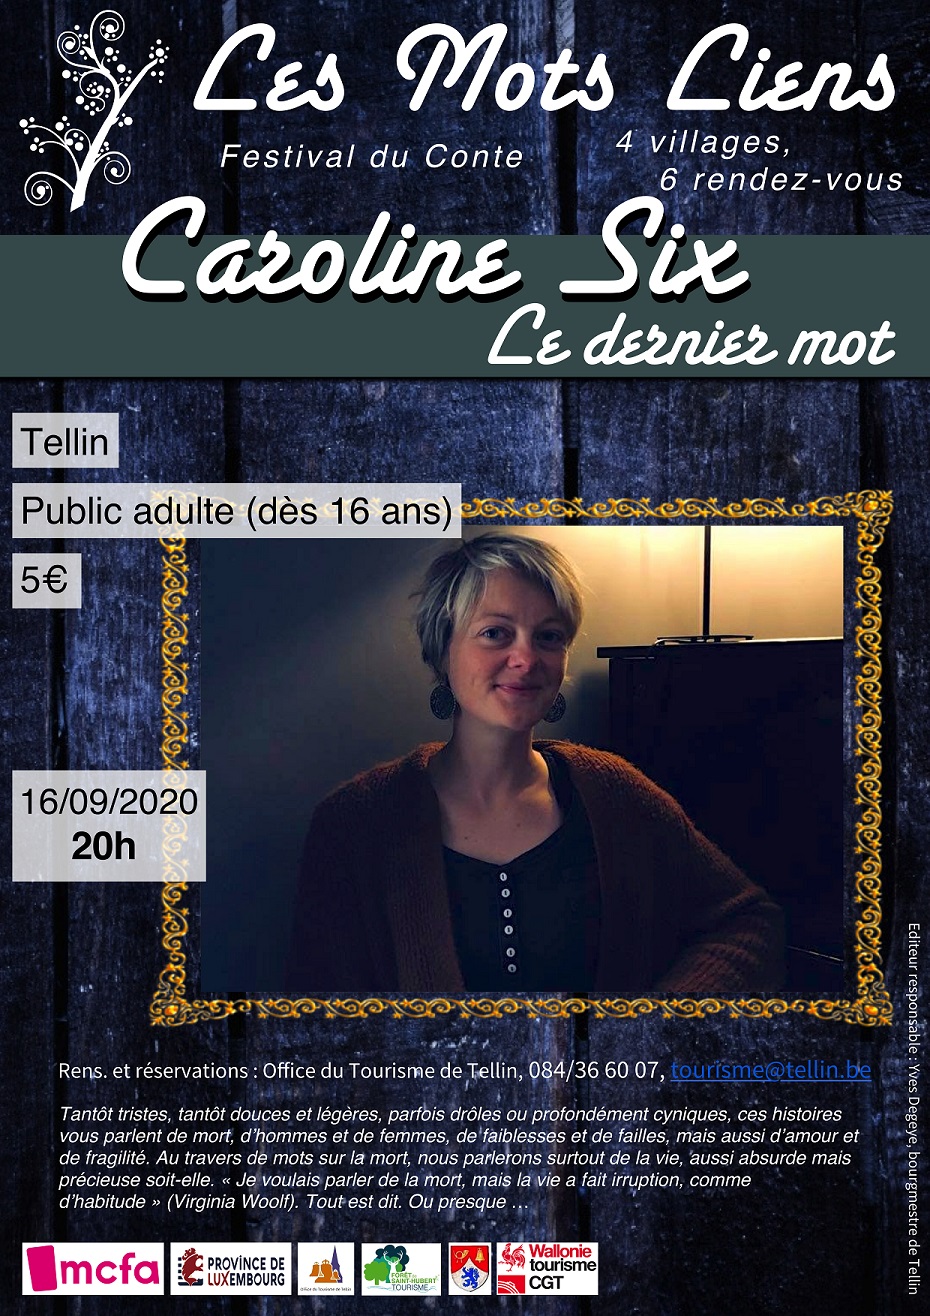 16 sept 2020 : Festival "Les Mots Liens" - Caroline Six